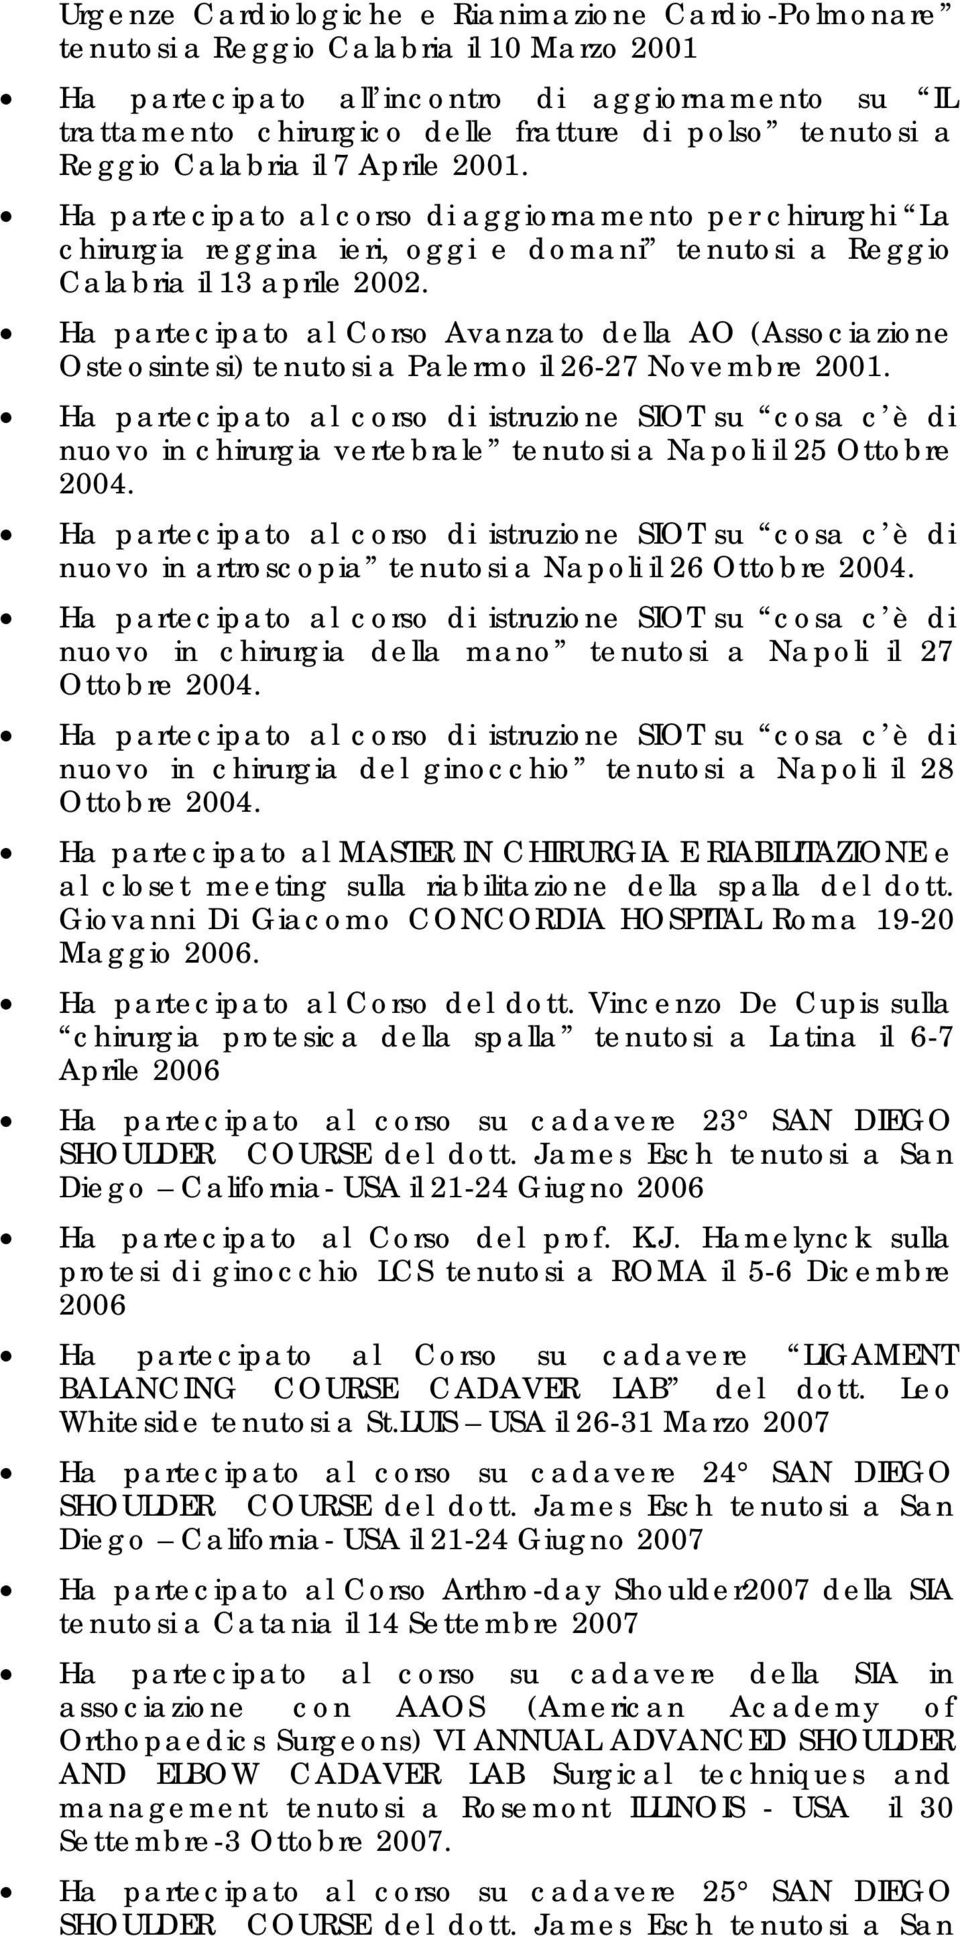 Ha partecipato al Corso Avanzato della AO (Associazione Osteosintesi) tenutosi a Palermo il 26-27 Novembre 2001.